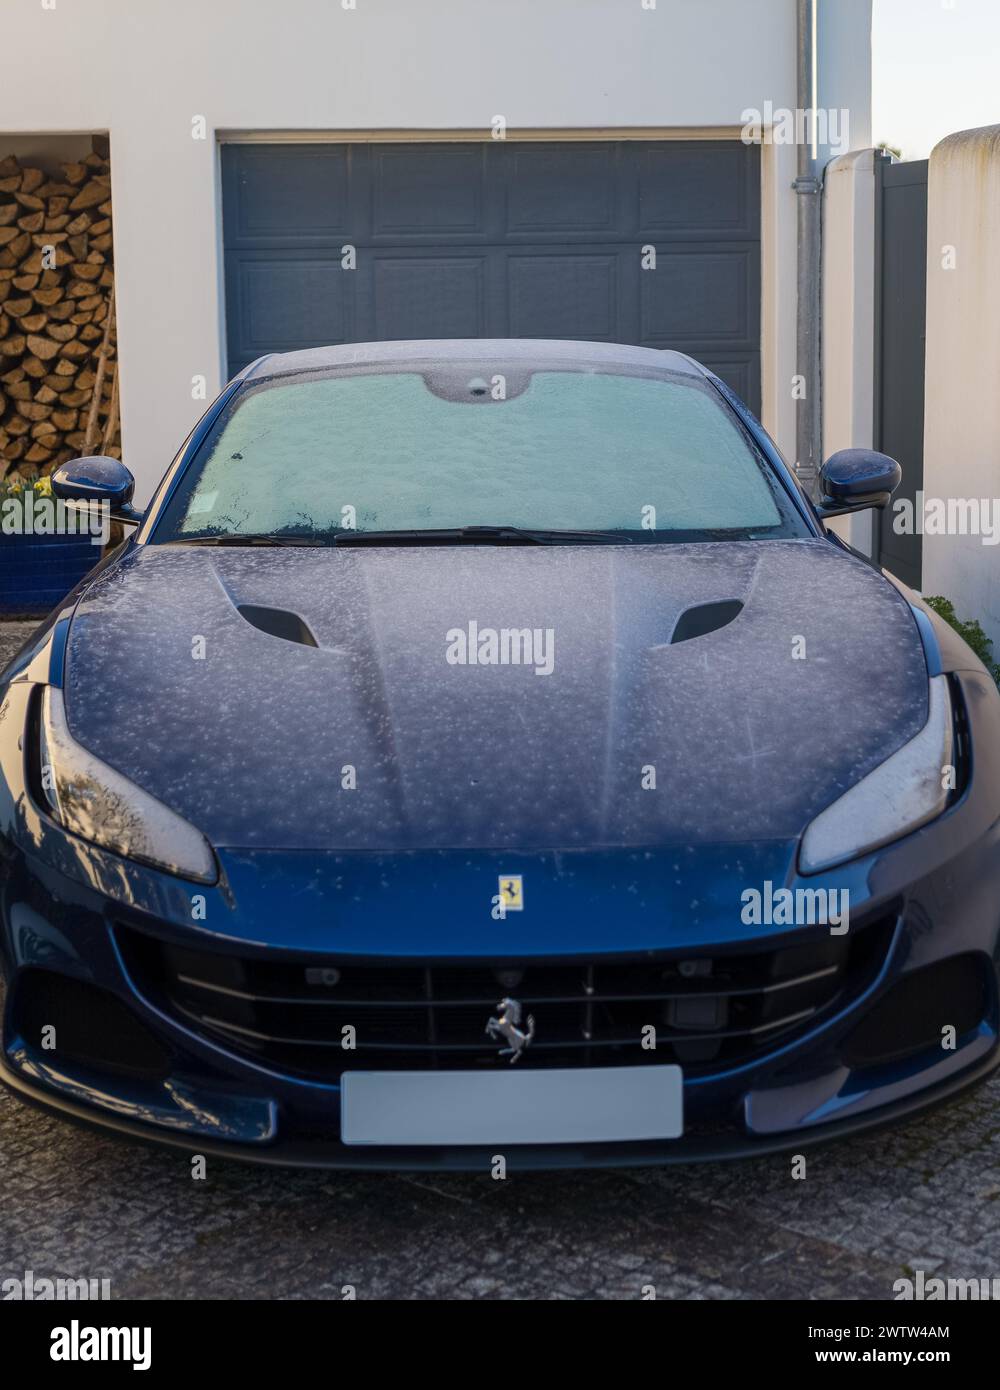 Bordeaux, 28 febbraio 2023. Una Ferrari blu parcheggiata di fronte a un garage in una giornata ghiacciata. Sul cofano sono visibili tracce di ghiaccio. Foto Stock